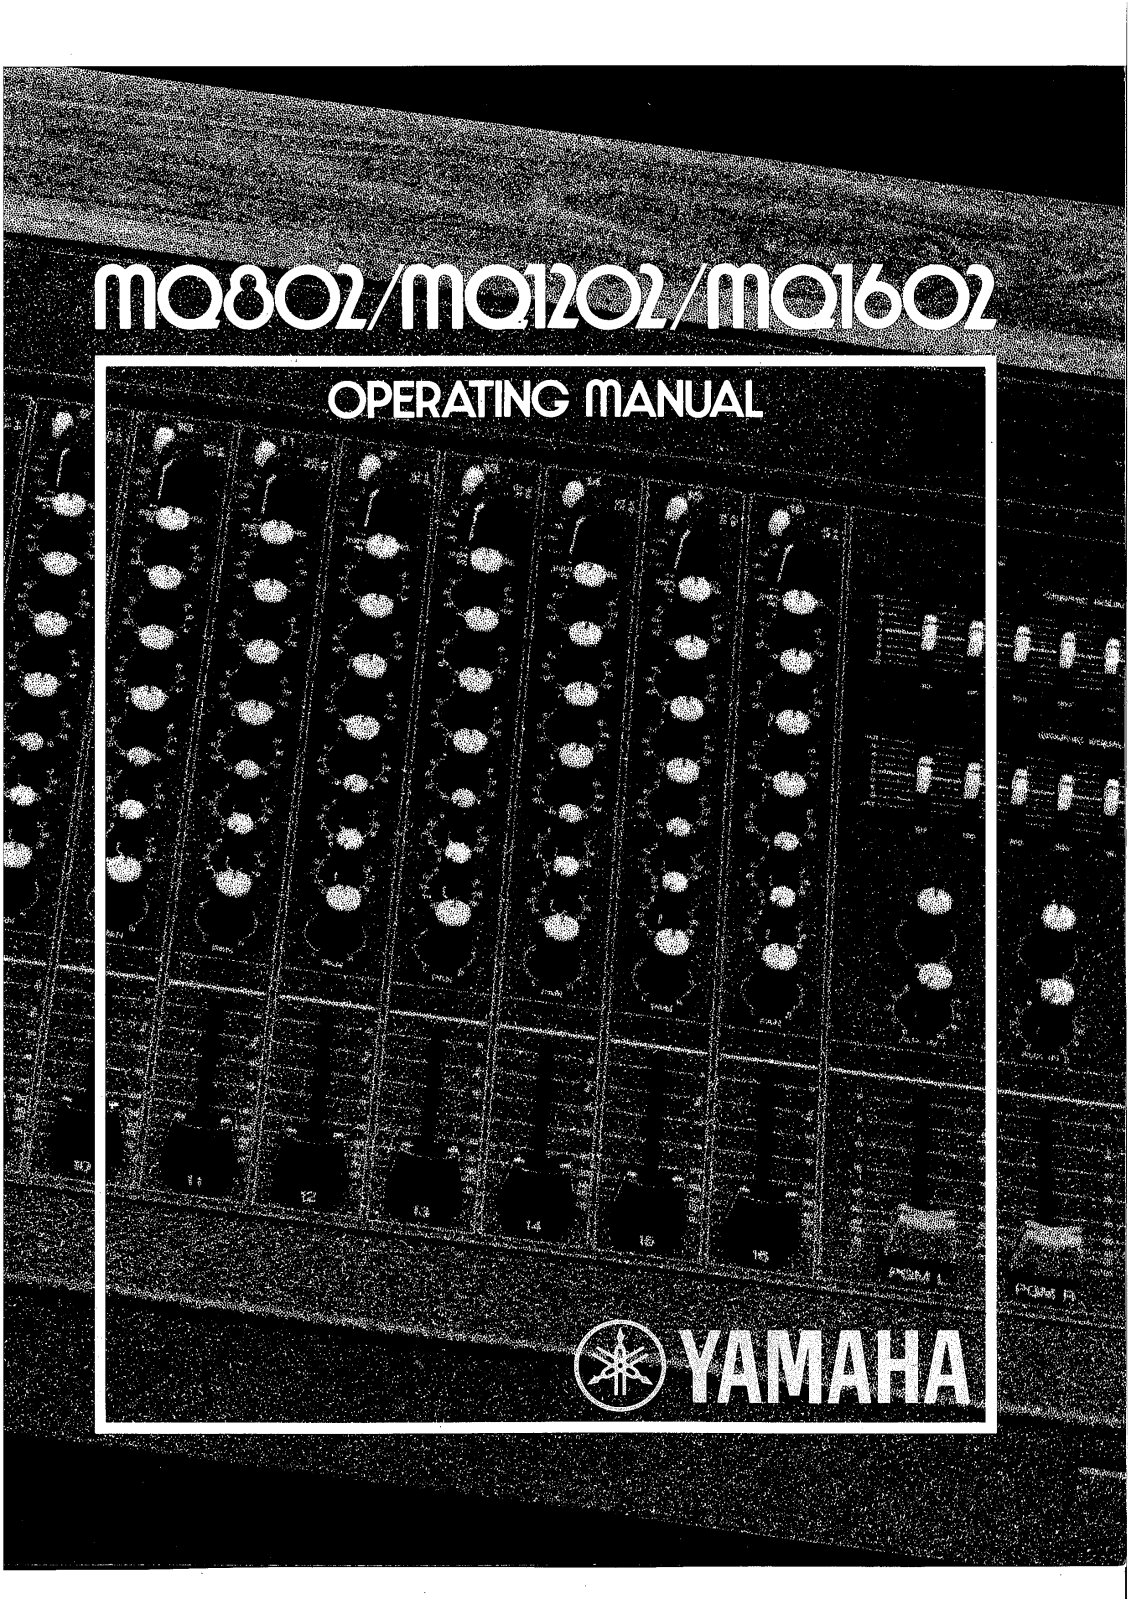 YAMAHA MQ802, MQ1202, MQ1602 User Manual